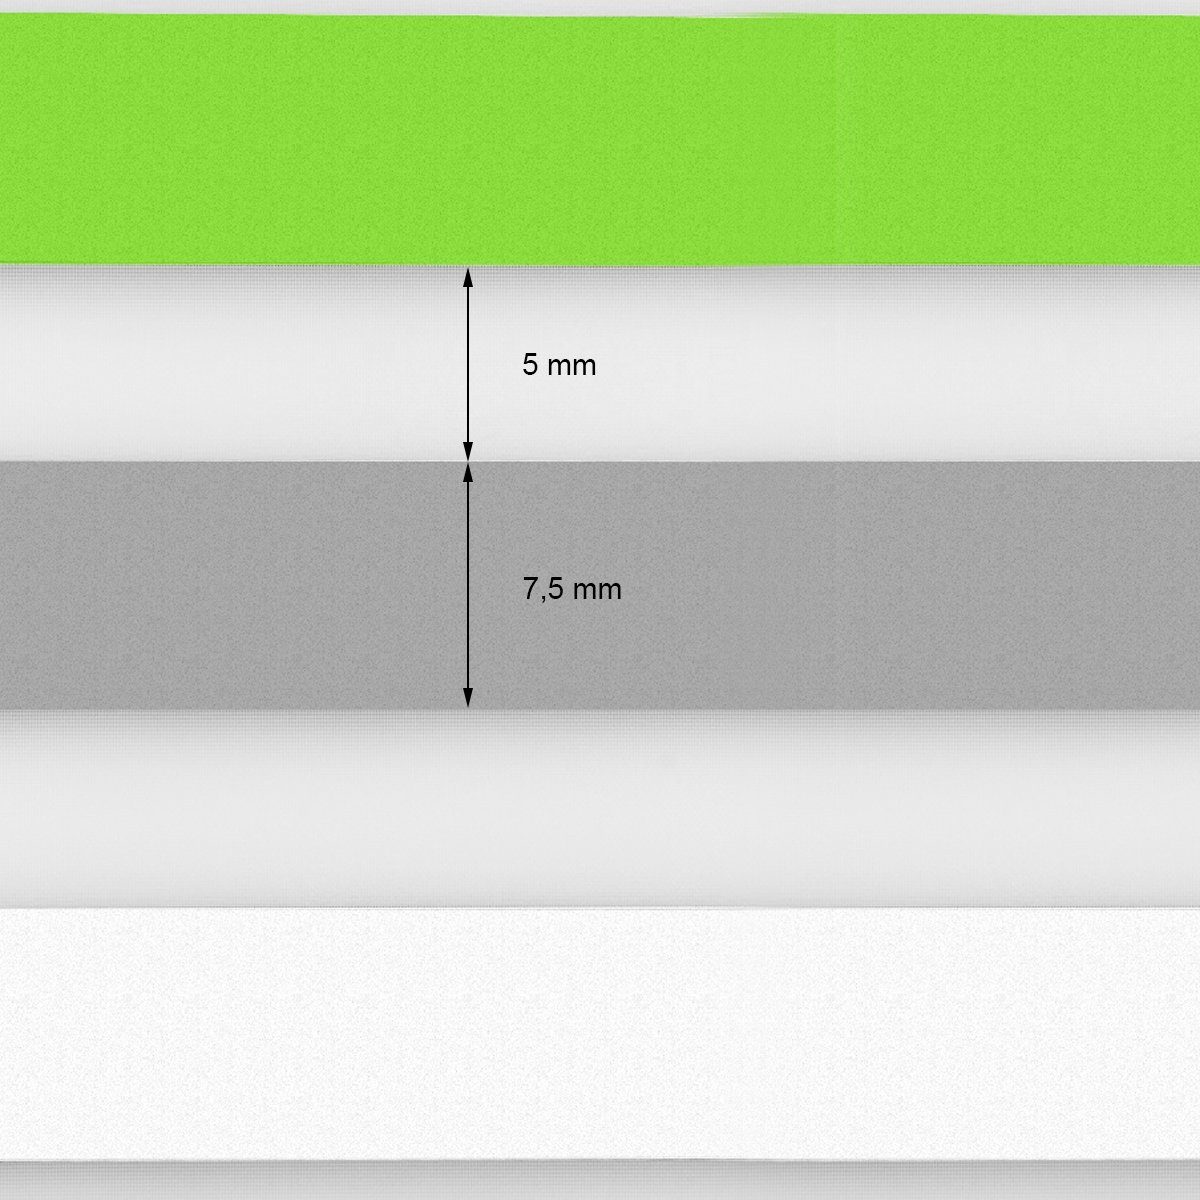 Klemmfix Doppelrollo grün-grau-weiß, Germany, Grün-Grau-Weiß 95x150cm mit Klemmträgern ECD Klemmfix, Klemmträgern, 95x150 mit Bohren cm, ohne